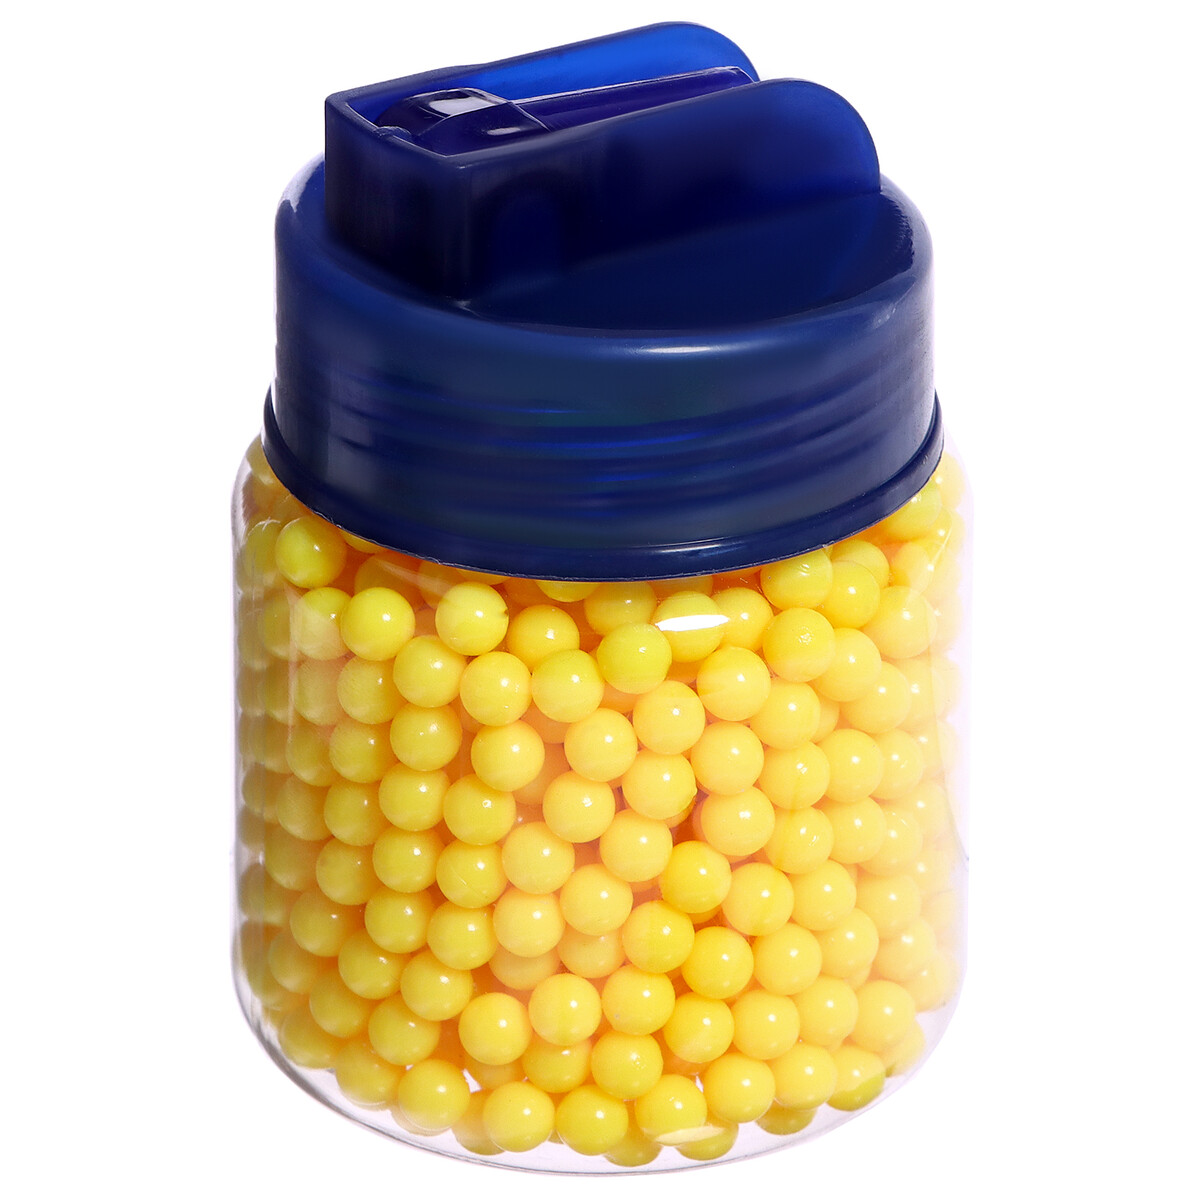 Пульки пластмассовые в банке, 1000 штук пульки 6 мм пластиковые 1500 шт желтые в банке